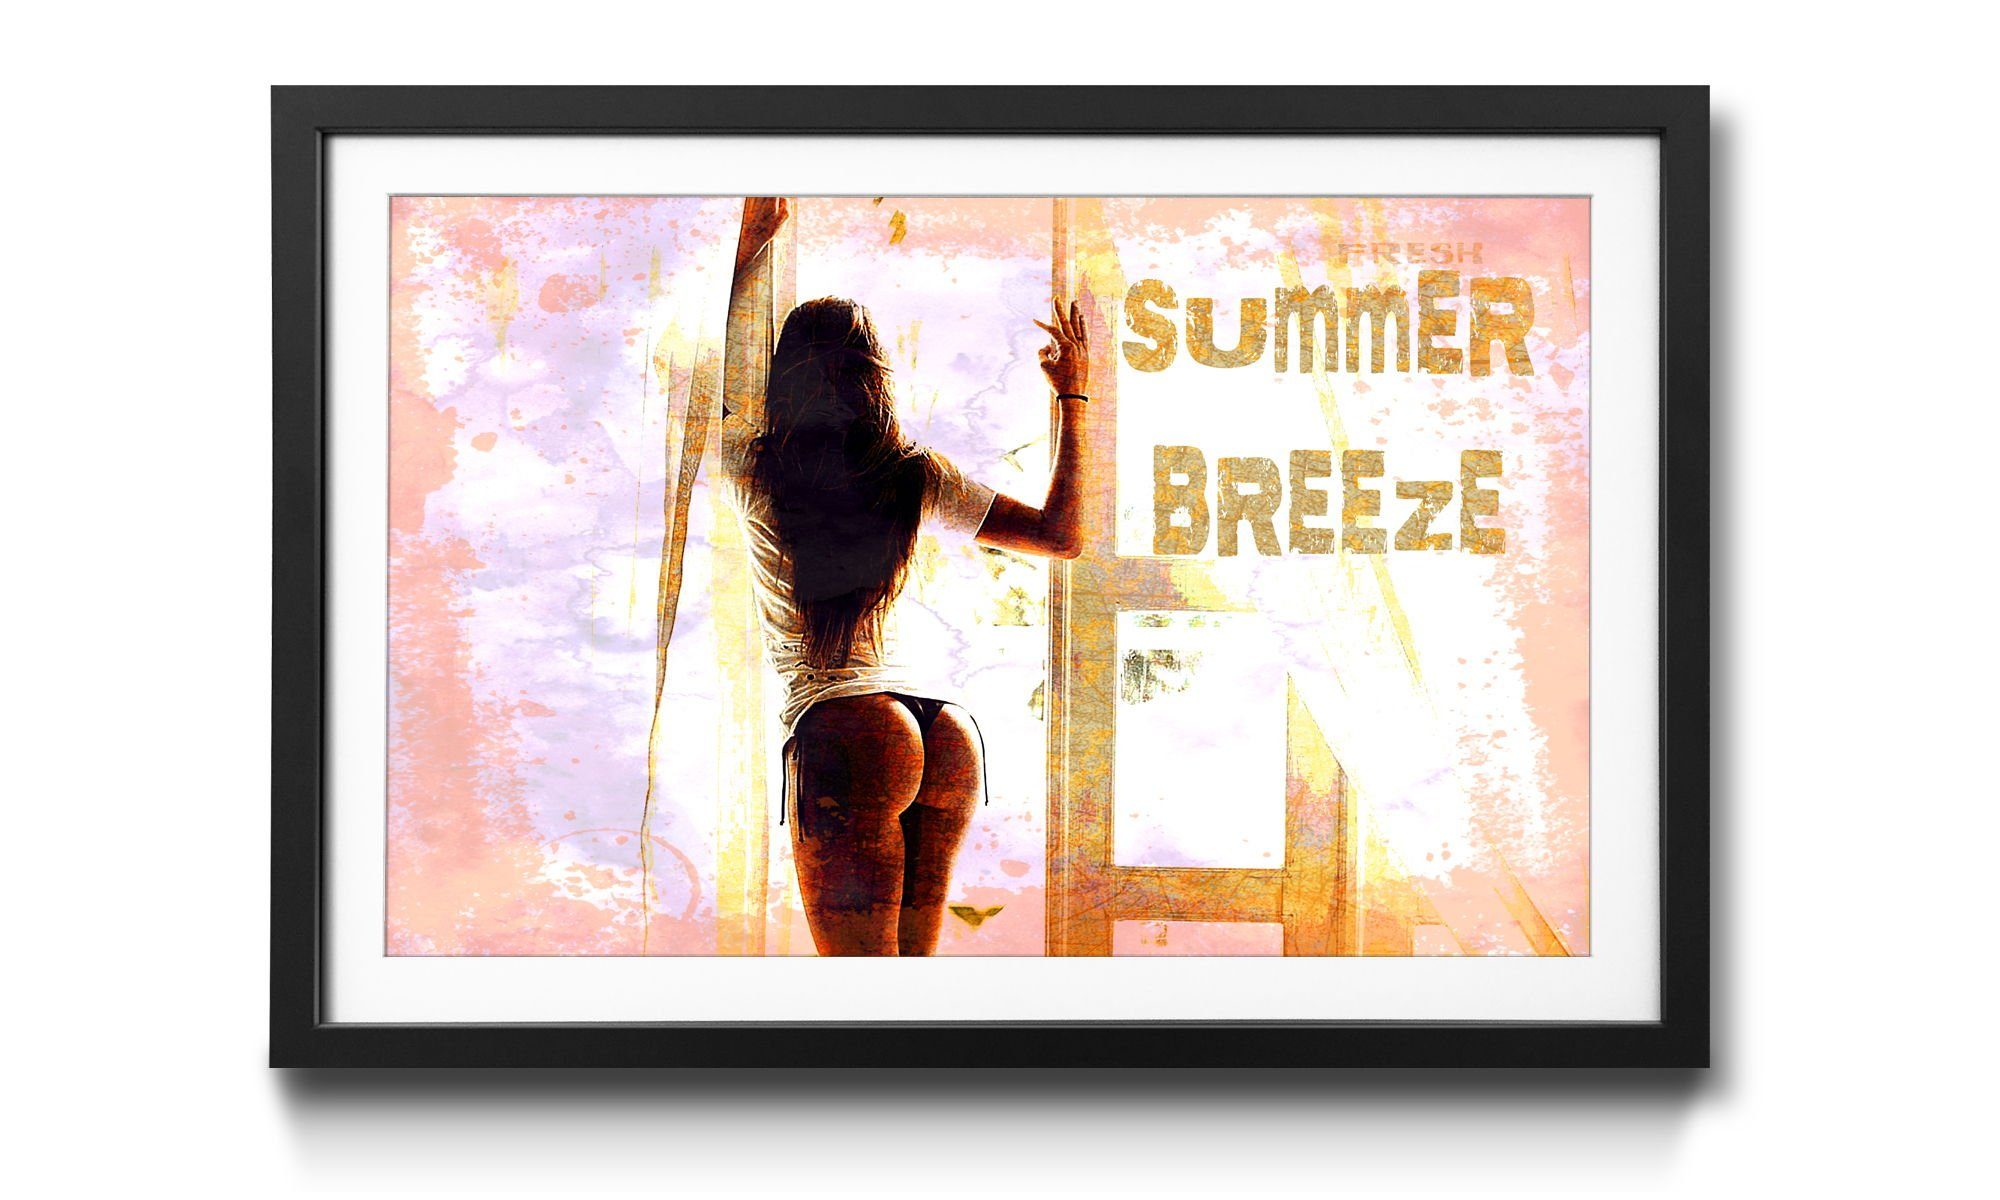 WandbilderXXL Bild mit Wandbild, erhältlich Erotik, in Breeze, Rahmen 4 Summer Größen